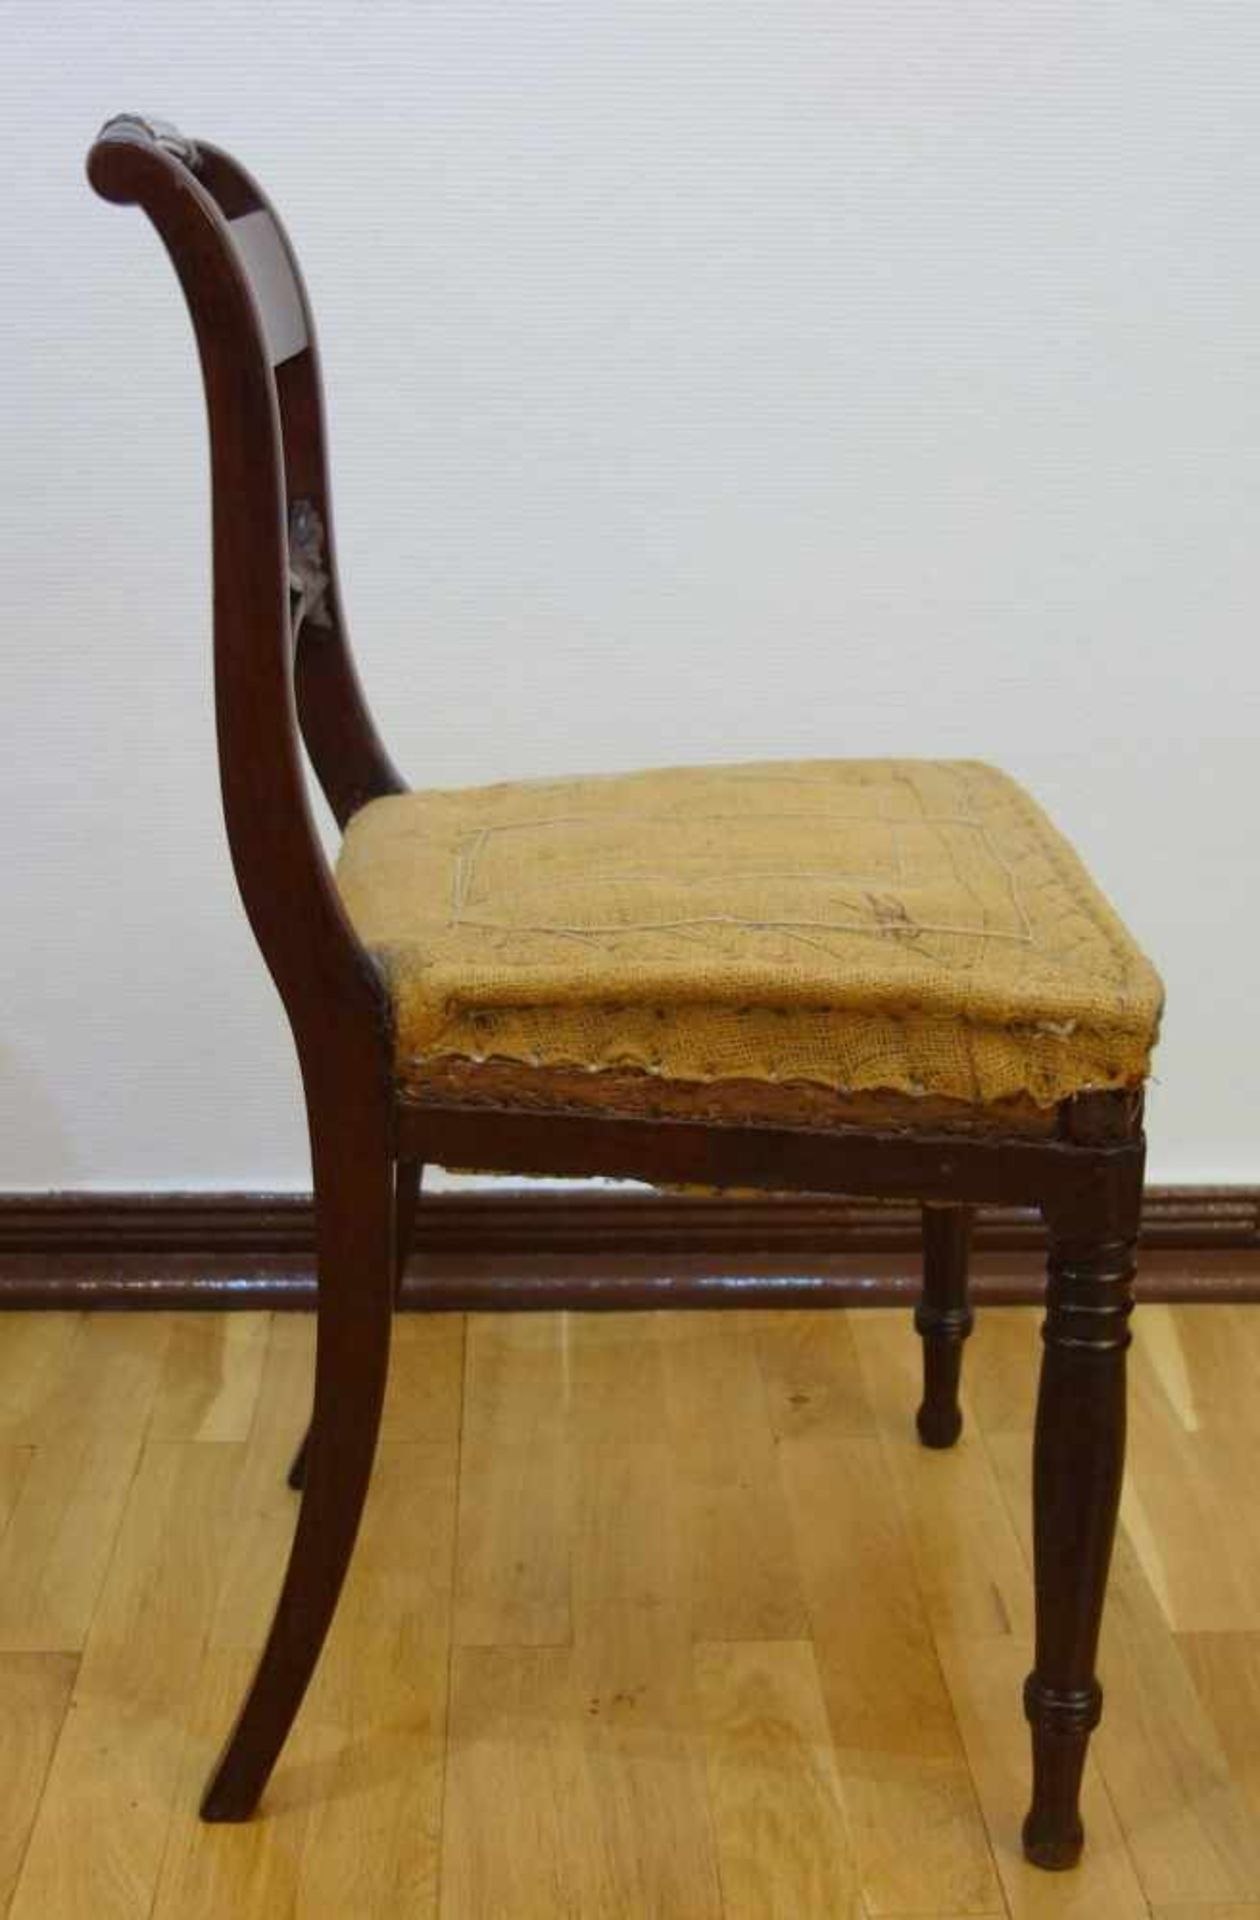 Stuhl, Biedermeier, um 1820Mahagoni, gepolstere Sitzfläche, Bezug zu ergänzen, restaurierter - Bild 3 aus 3